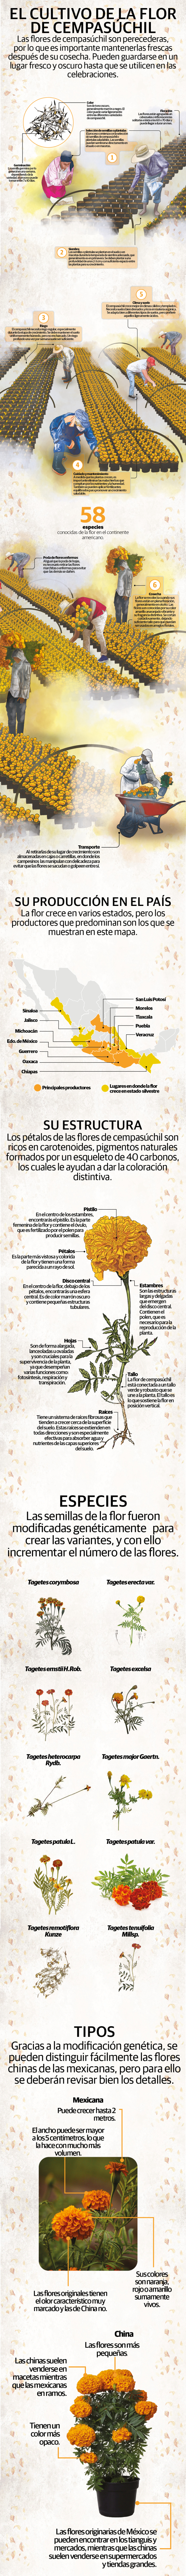 Cempasúchil, flor prehispánica para el Día de Muertos que amarra auge